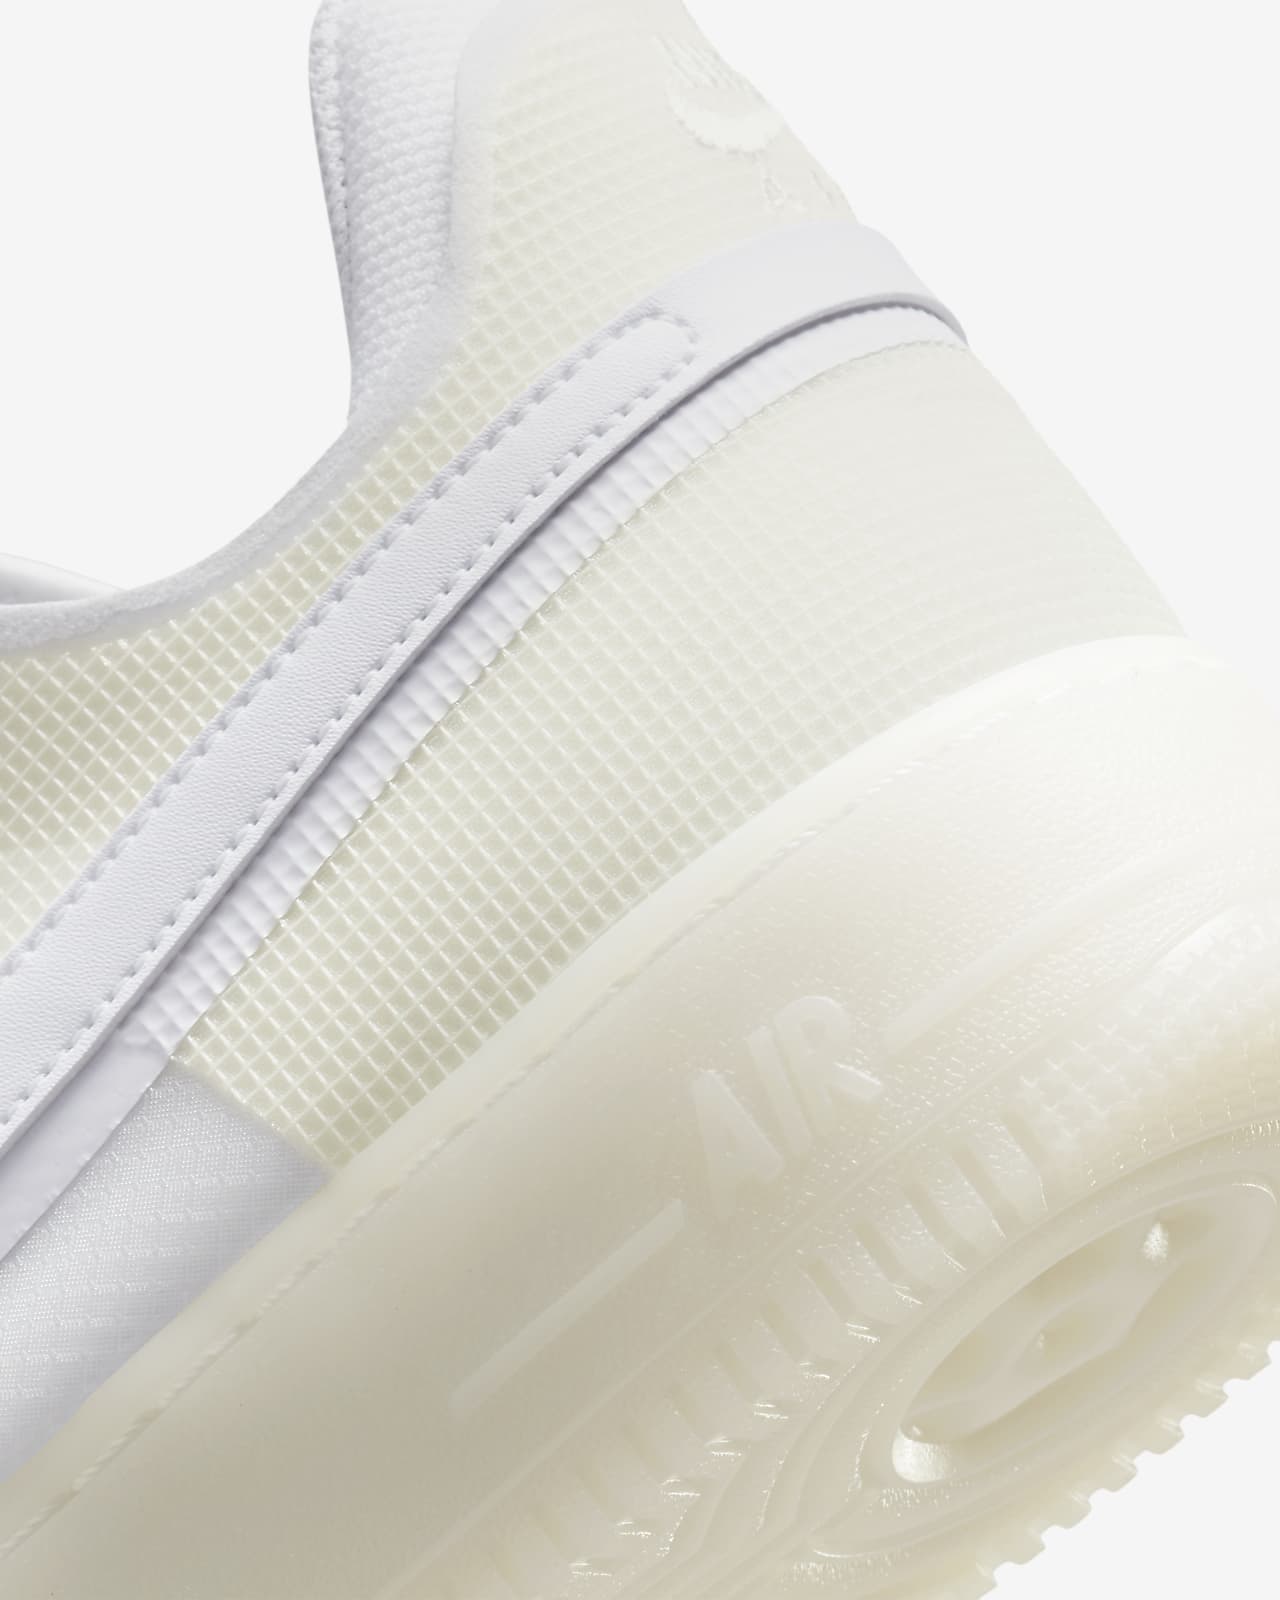 Las Nike Air Force 1 Picante Red serán tus zapatillas blancas y rojas  favoritas de 2023